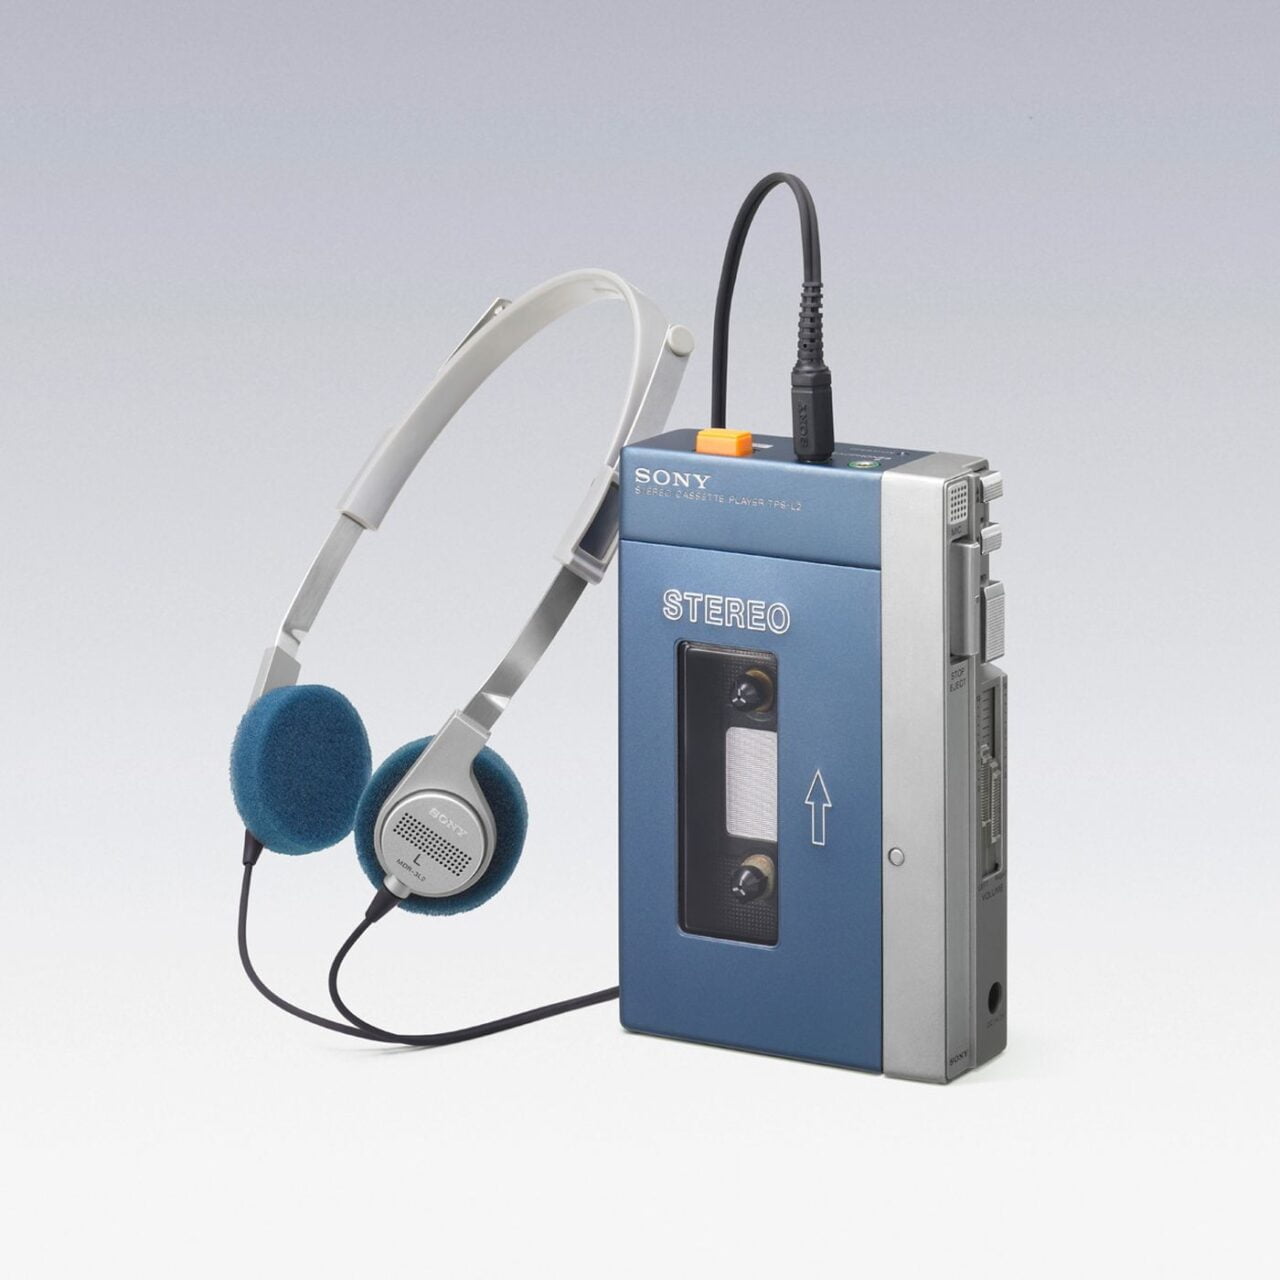 Sony Walkman muzyka na kasetach